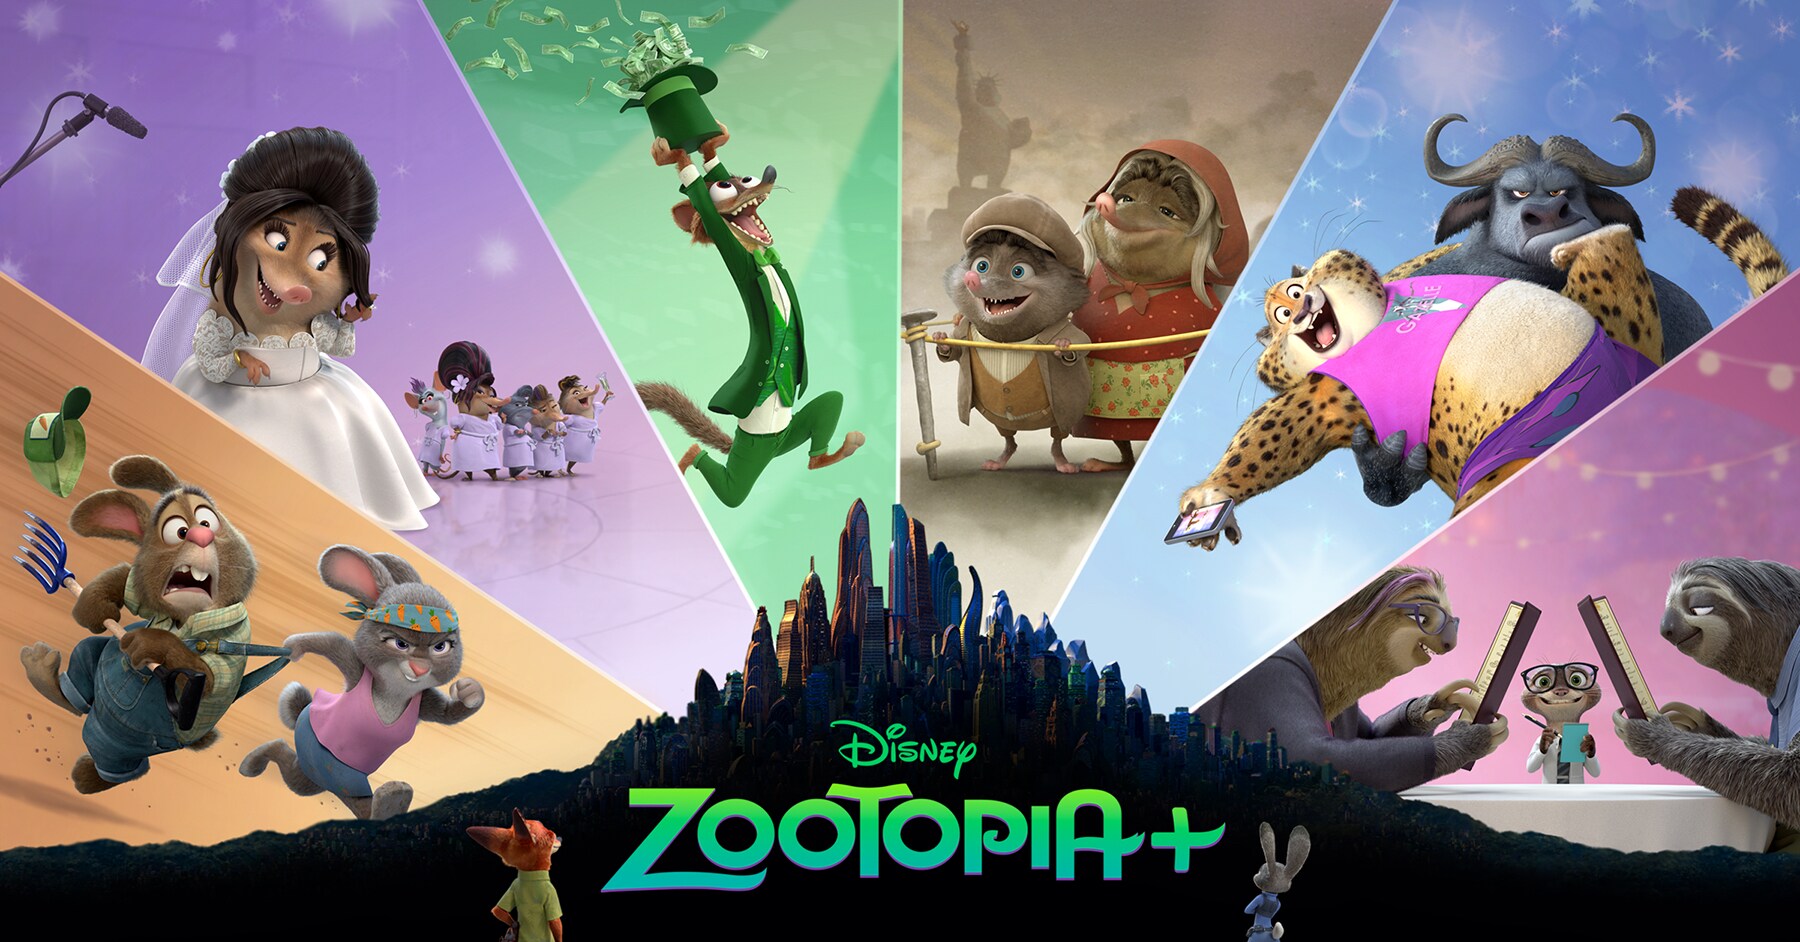 Quando 'Zootopia+' estreia no Disney+